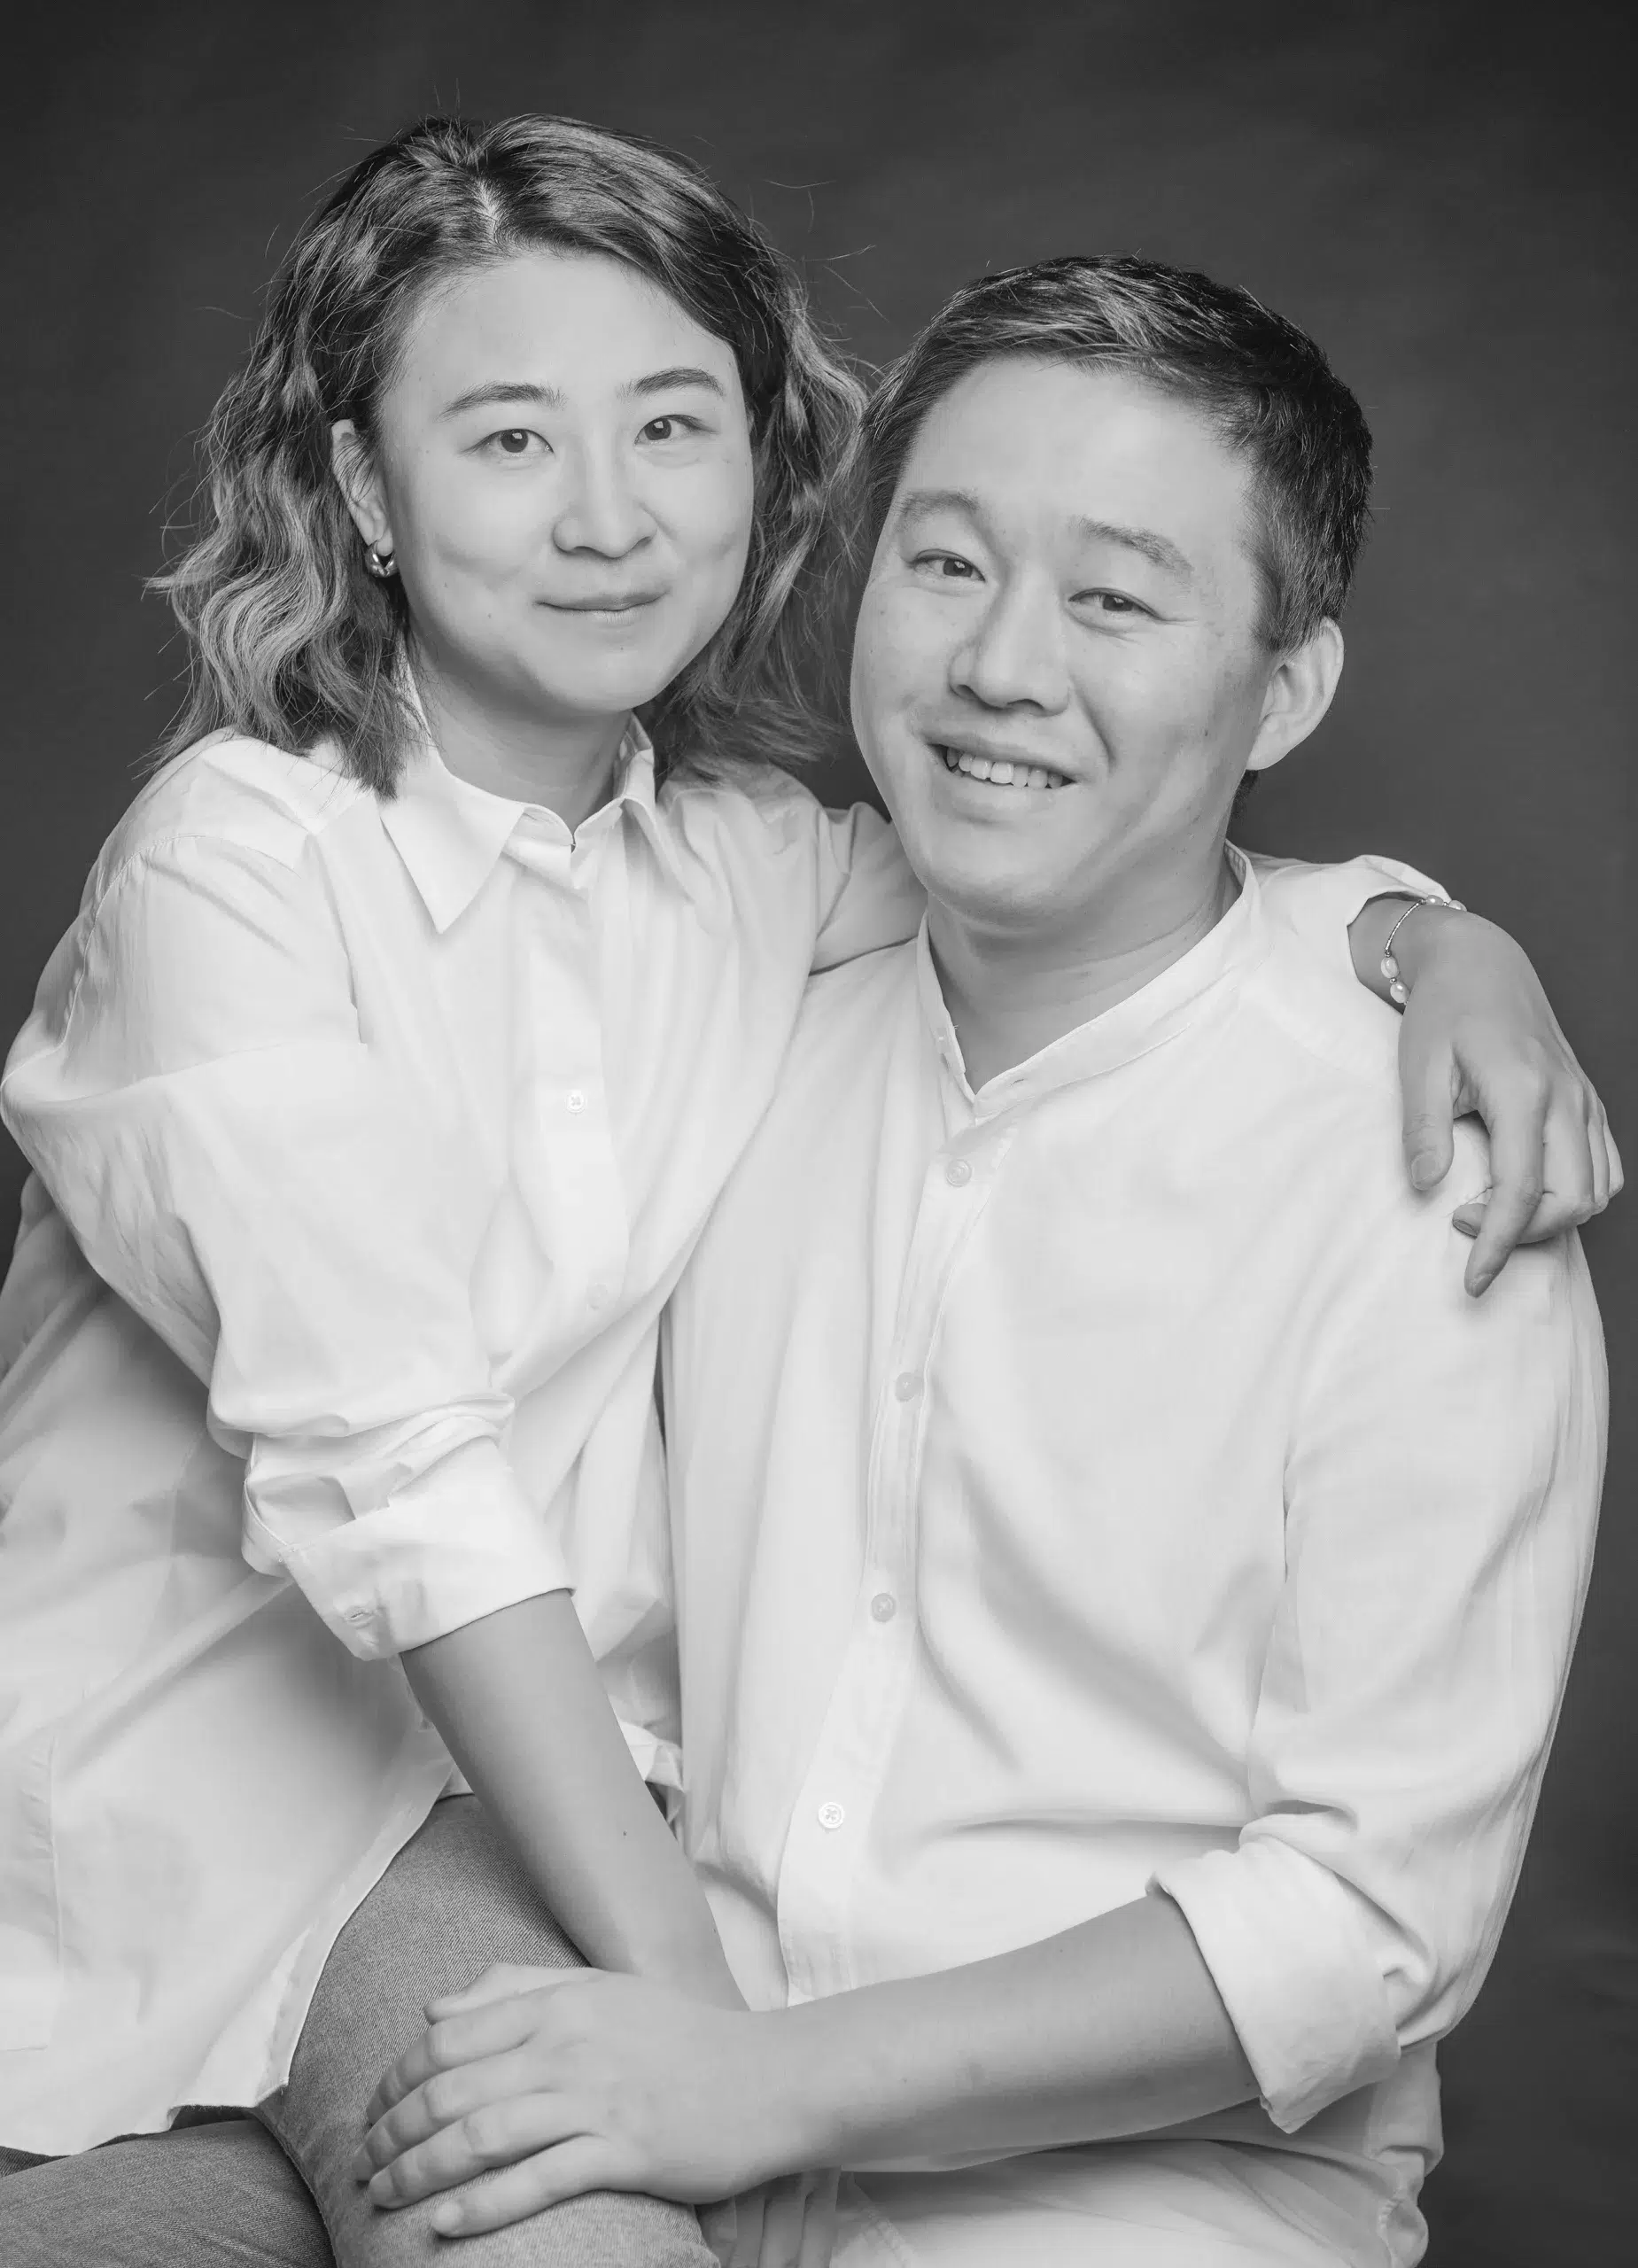 Ein schwarz-weiß Foto zeigt ein verliebtes Pärchen, das für die Kamera posiert. Die beiden strahlen Glück und Zuneigung aus.